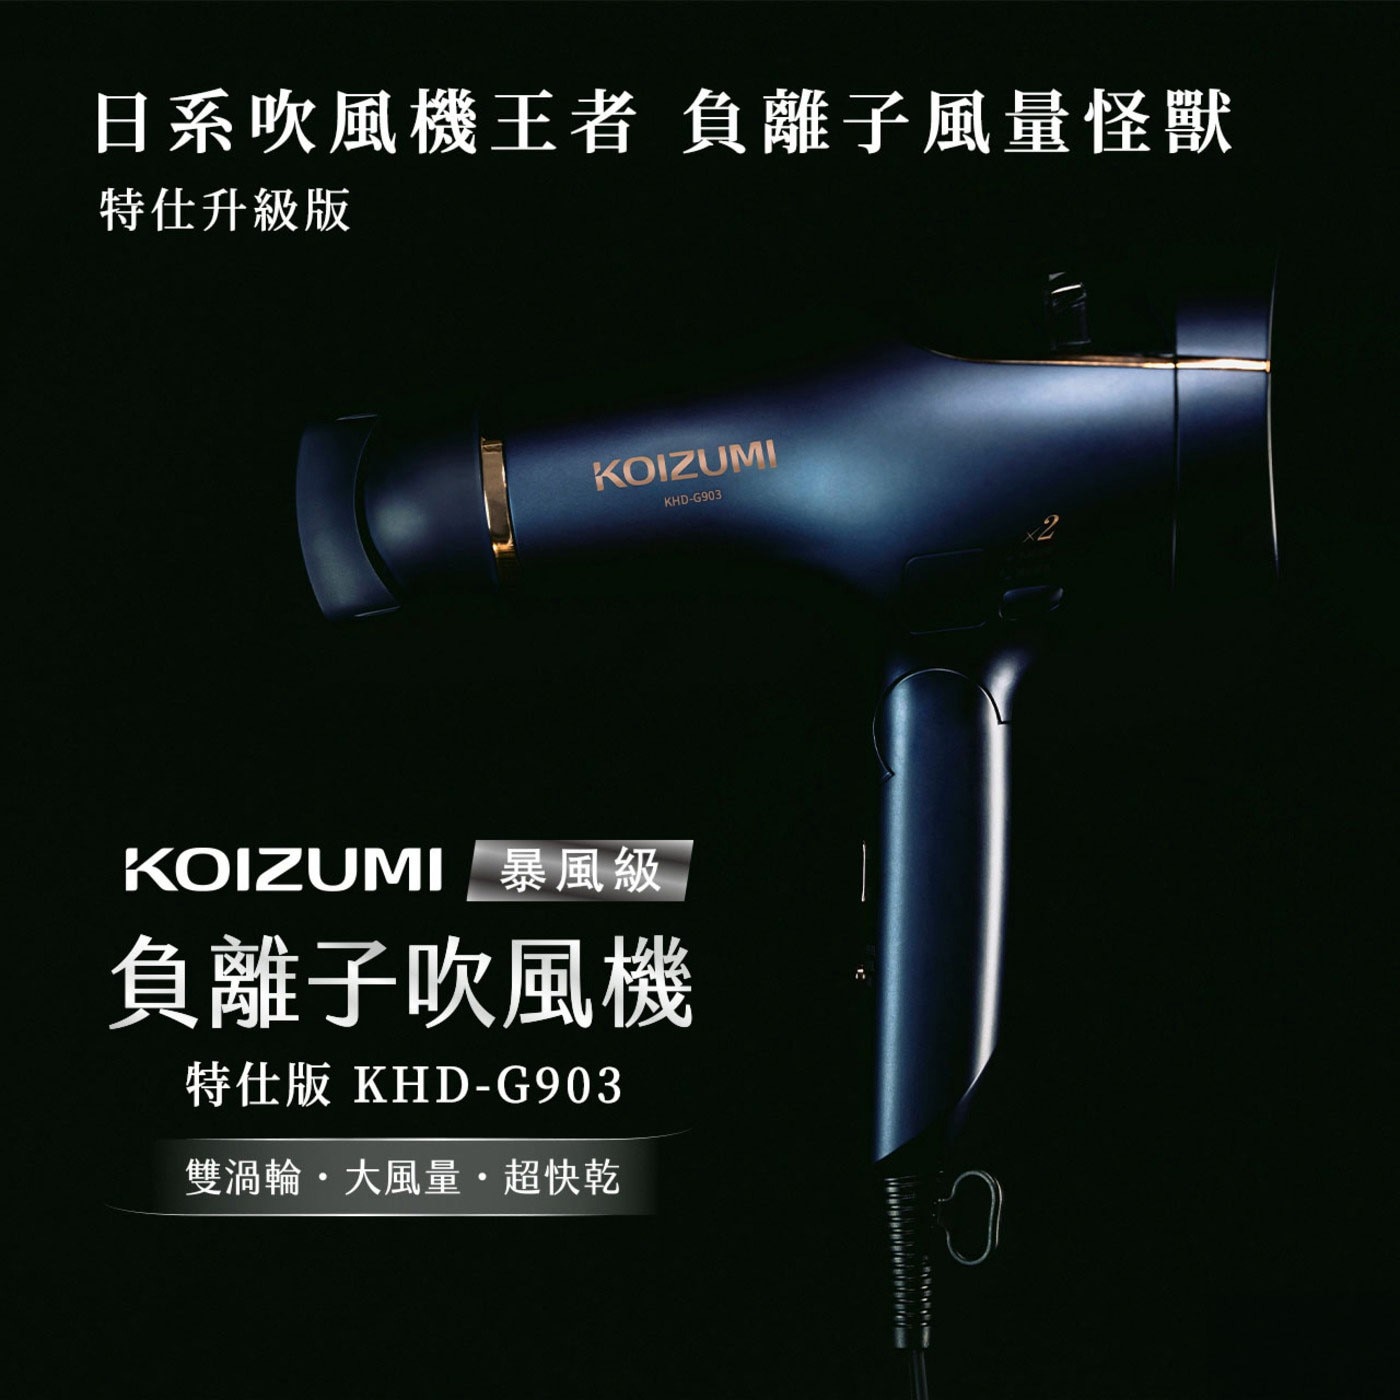 KOIZUMI 暴風級雙渦輪負離子吹風機 特仕版 KHD-G903-AE，雙倍負離子，有效撫平毛躁，吹髮即護髮吹出水亮光澤感，雙渦輪超大風量x 20種組合模式，頭皮護理模式，從根本養護秀髮。